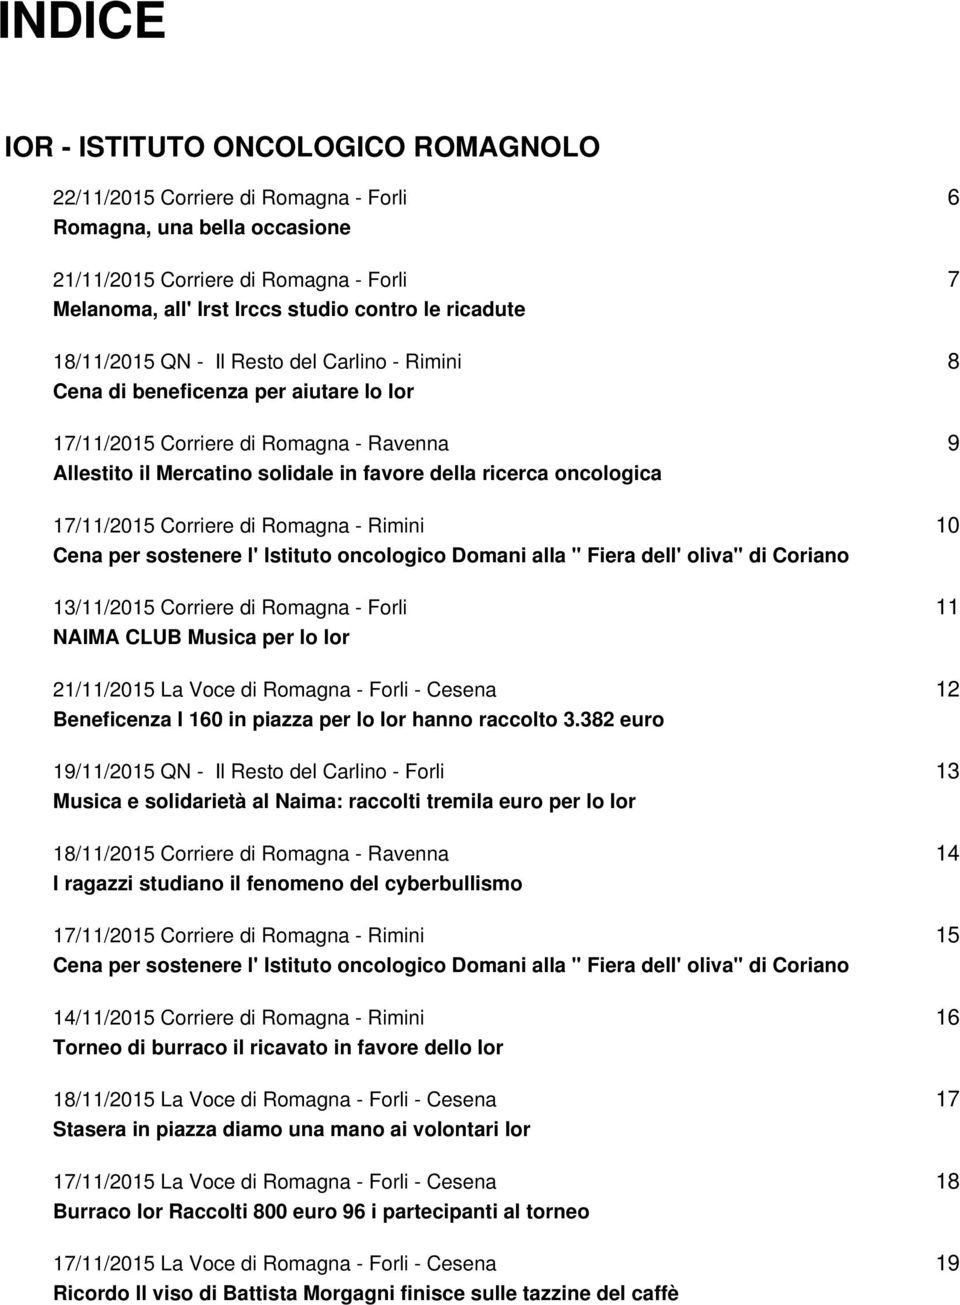 oncologica 17/11/2015 Corriere di Romagna - Rimini Cena per sostenere l' Istituto oncologico Domani alla " Fiera dell' oliva" di Coriano 13/11/2015 Corriere di Romagna - Forli NAIMA CLUB Musica per